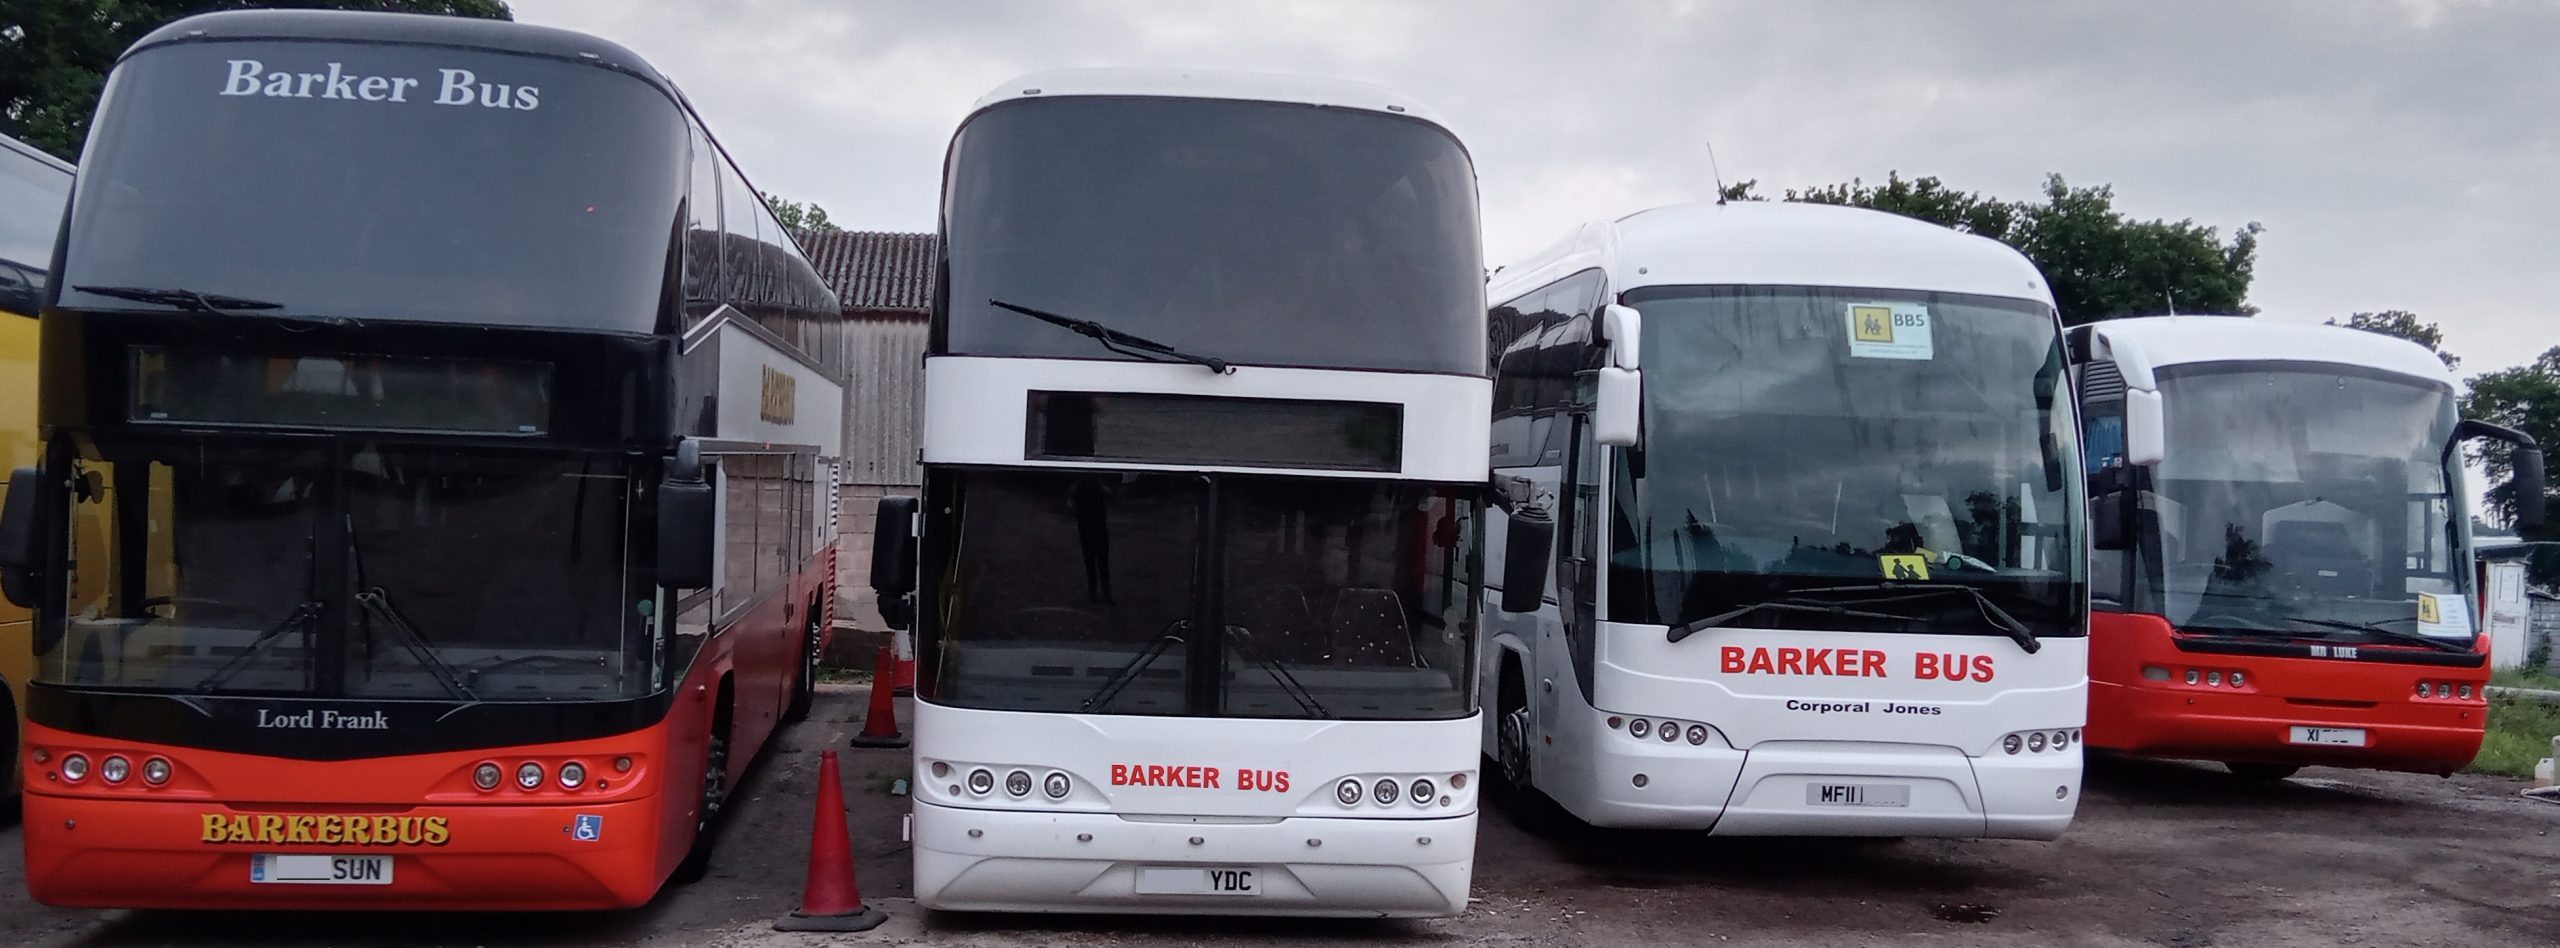 Our Fleet - Barker Bus